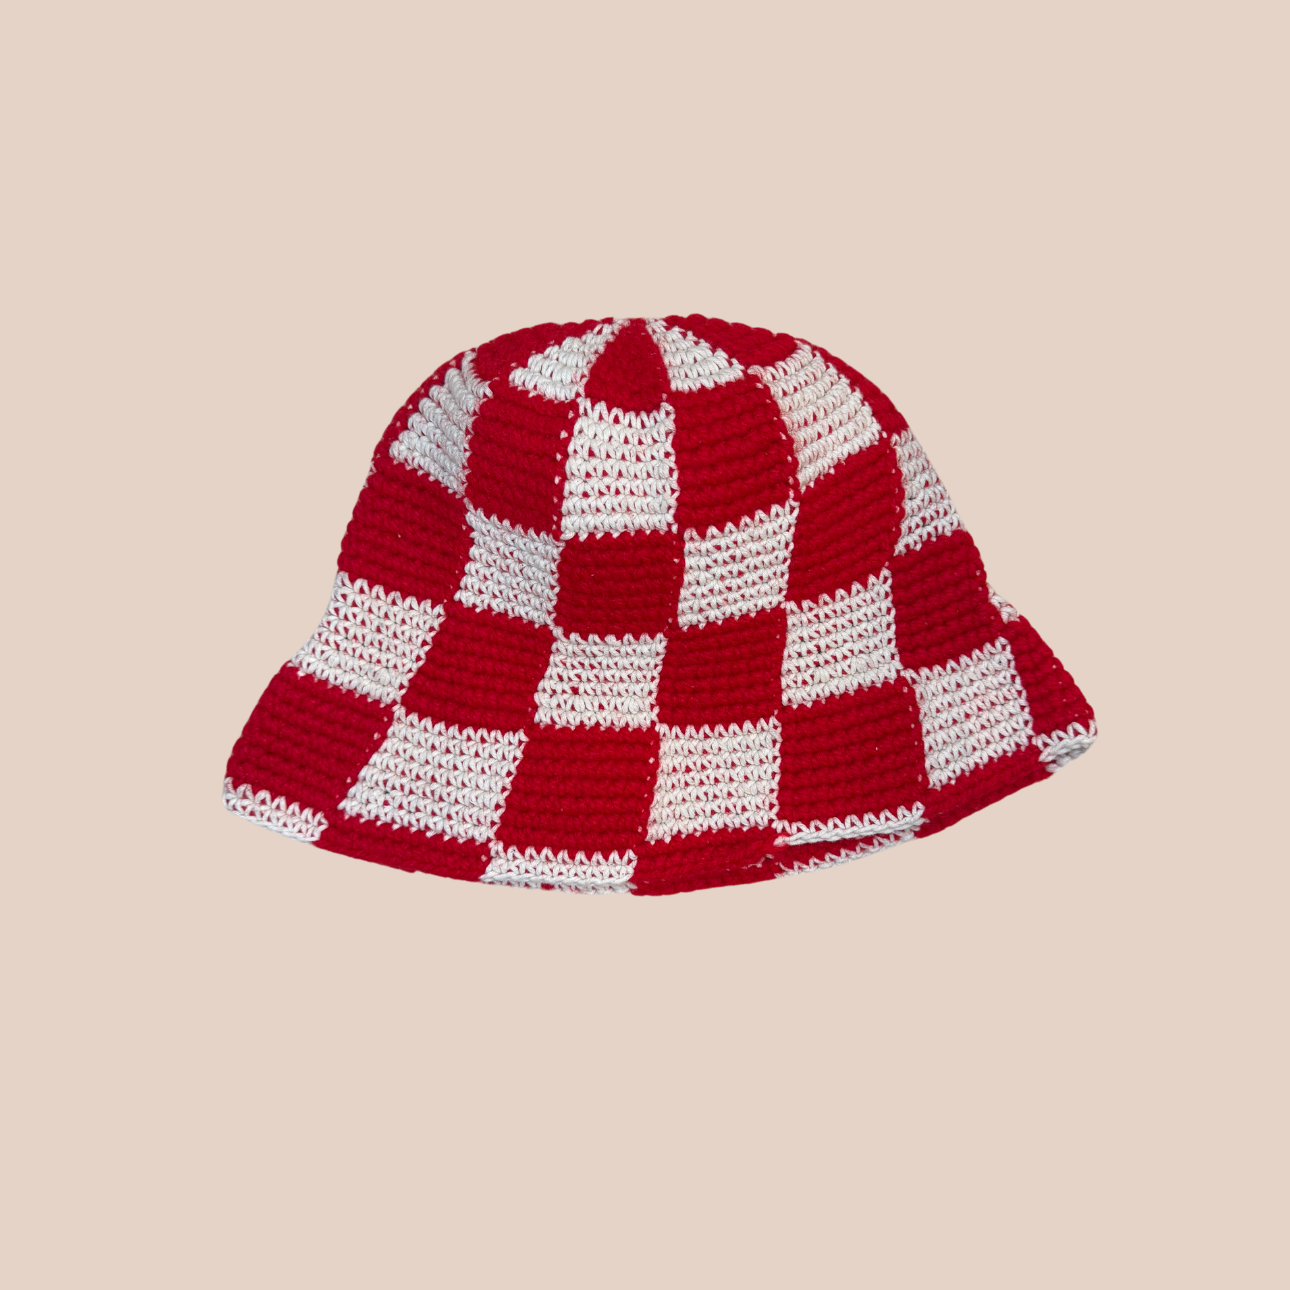 Image du bucket hat motif damier de Maison Badigo, bucket hat (bob) blanc et rouge unique et tendance